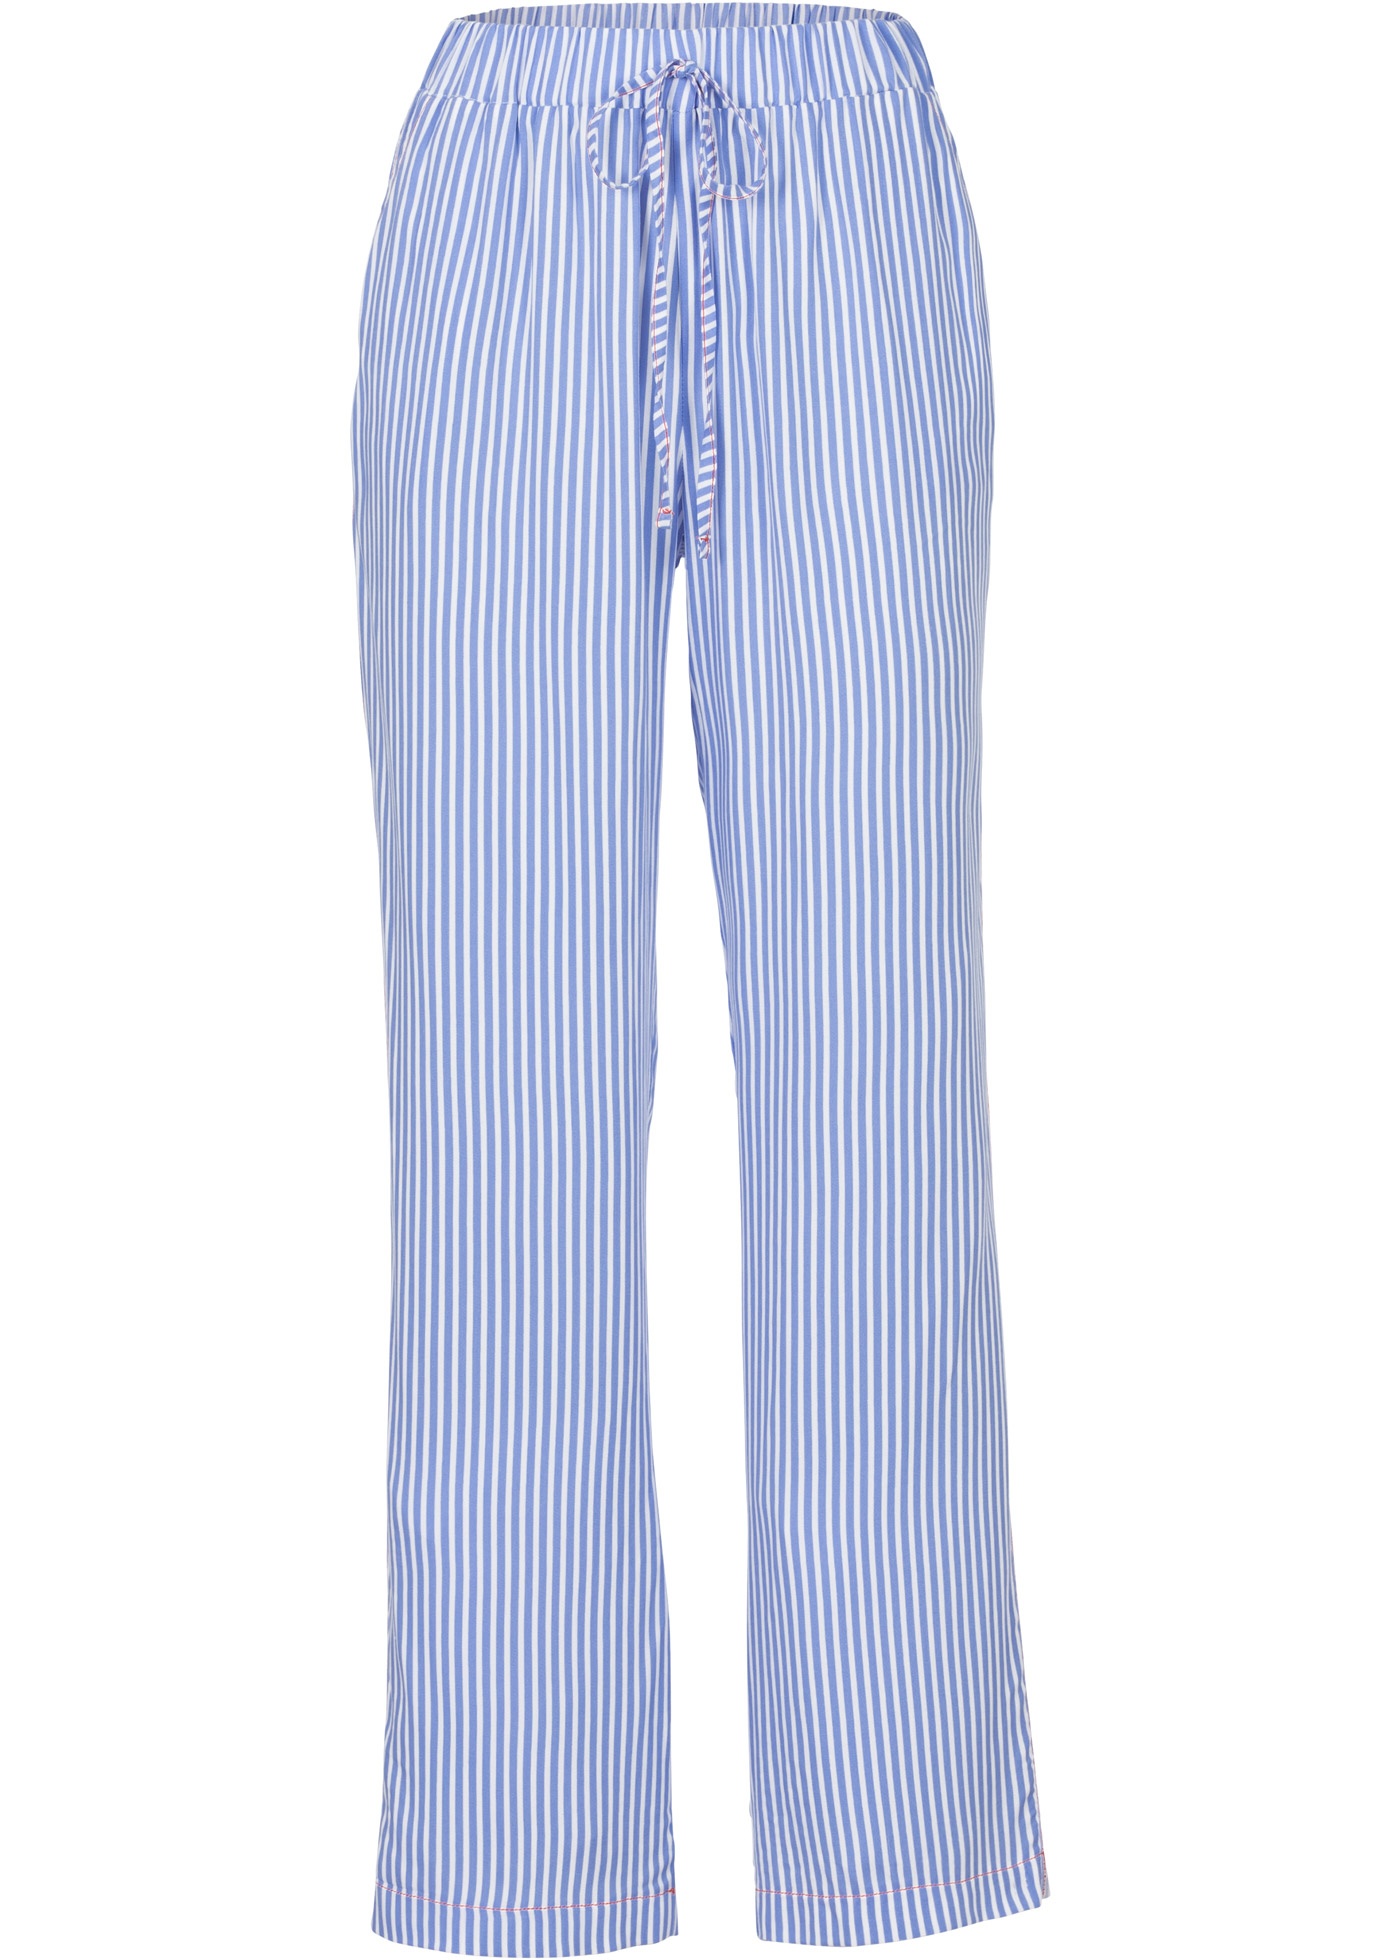 Jake*s Spodnie palazzo niebieski-bia\u0142y Wz\u00f3r w paski W stylu biznesowym Moda Spodnie Spodnie palazzo 